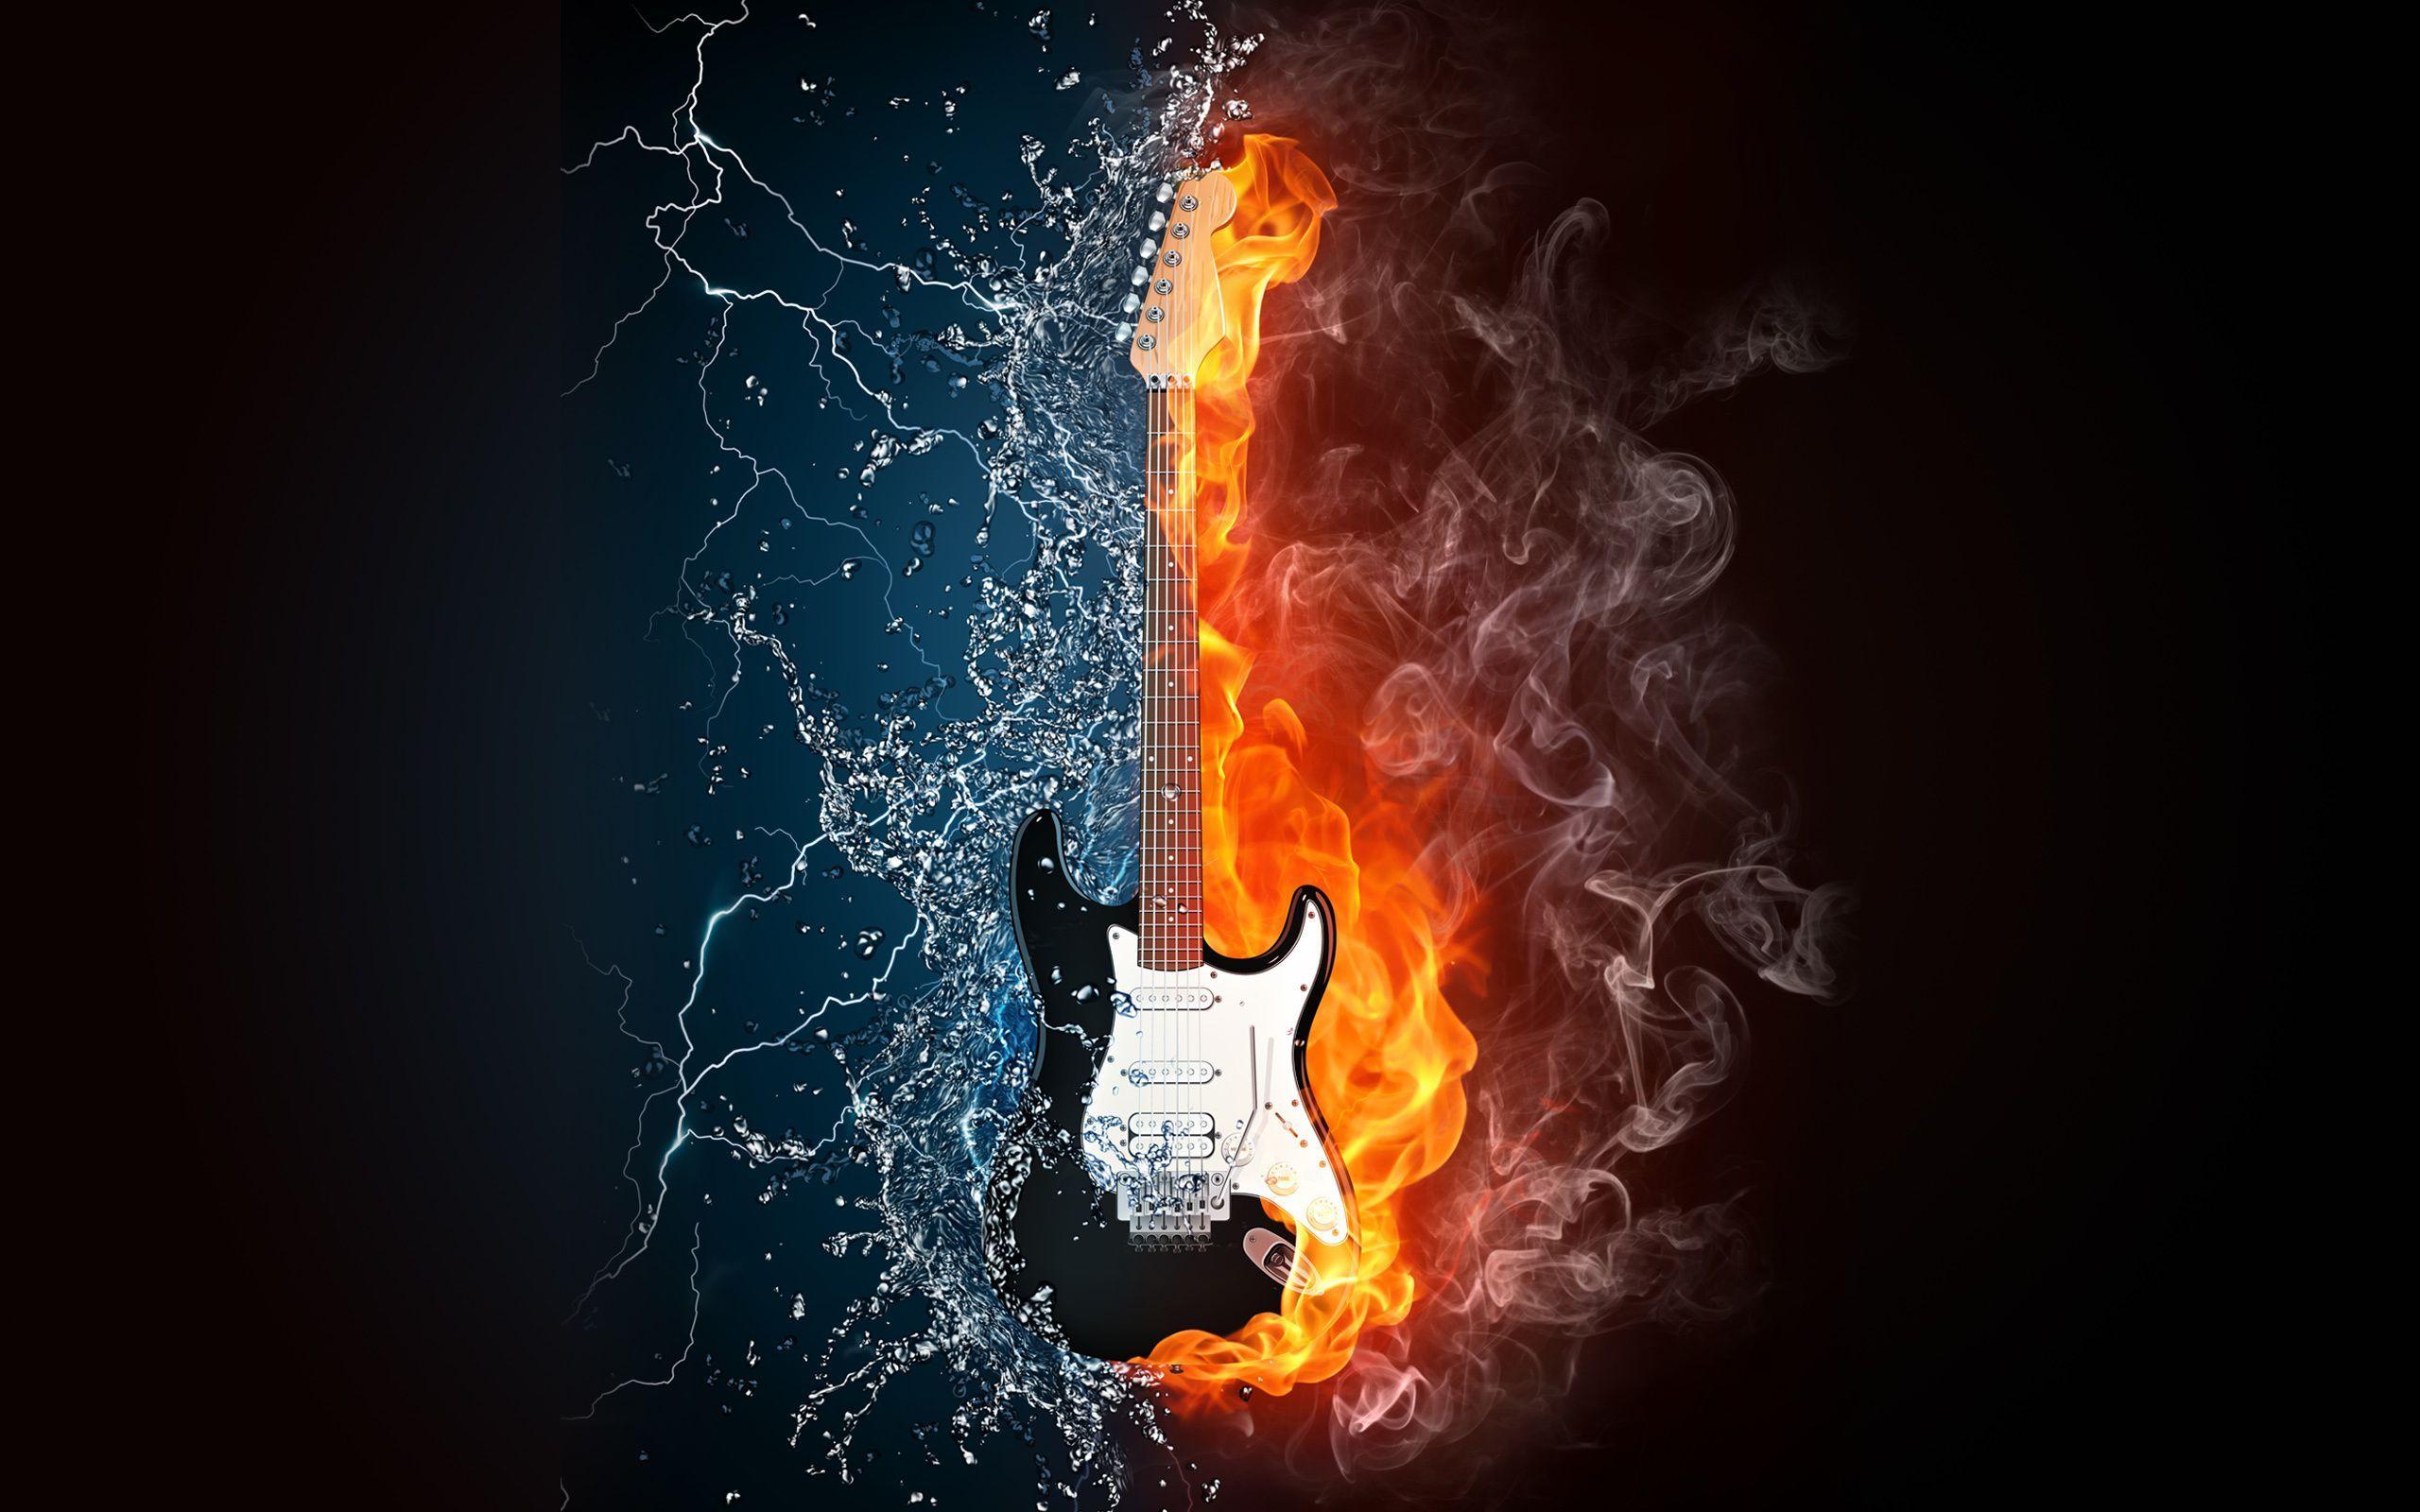 Guitar On Fire Wallpaper